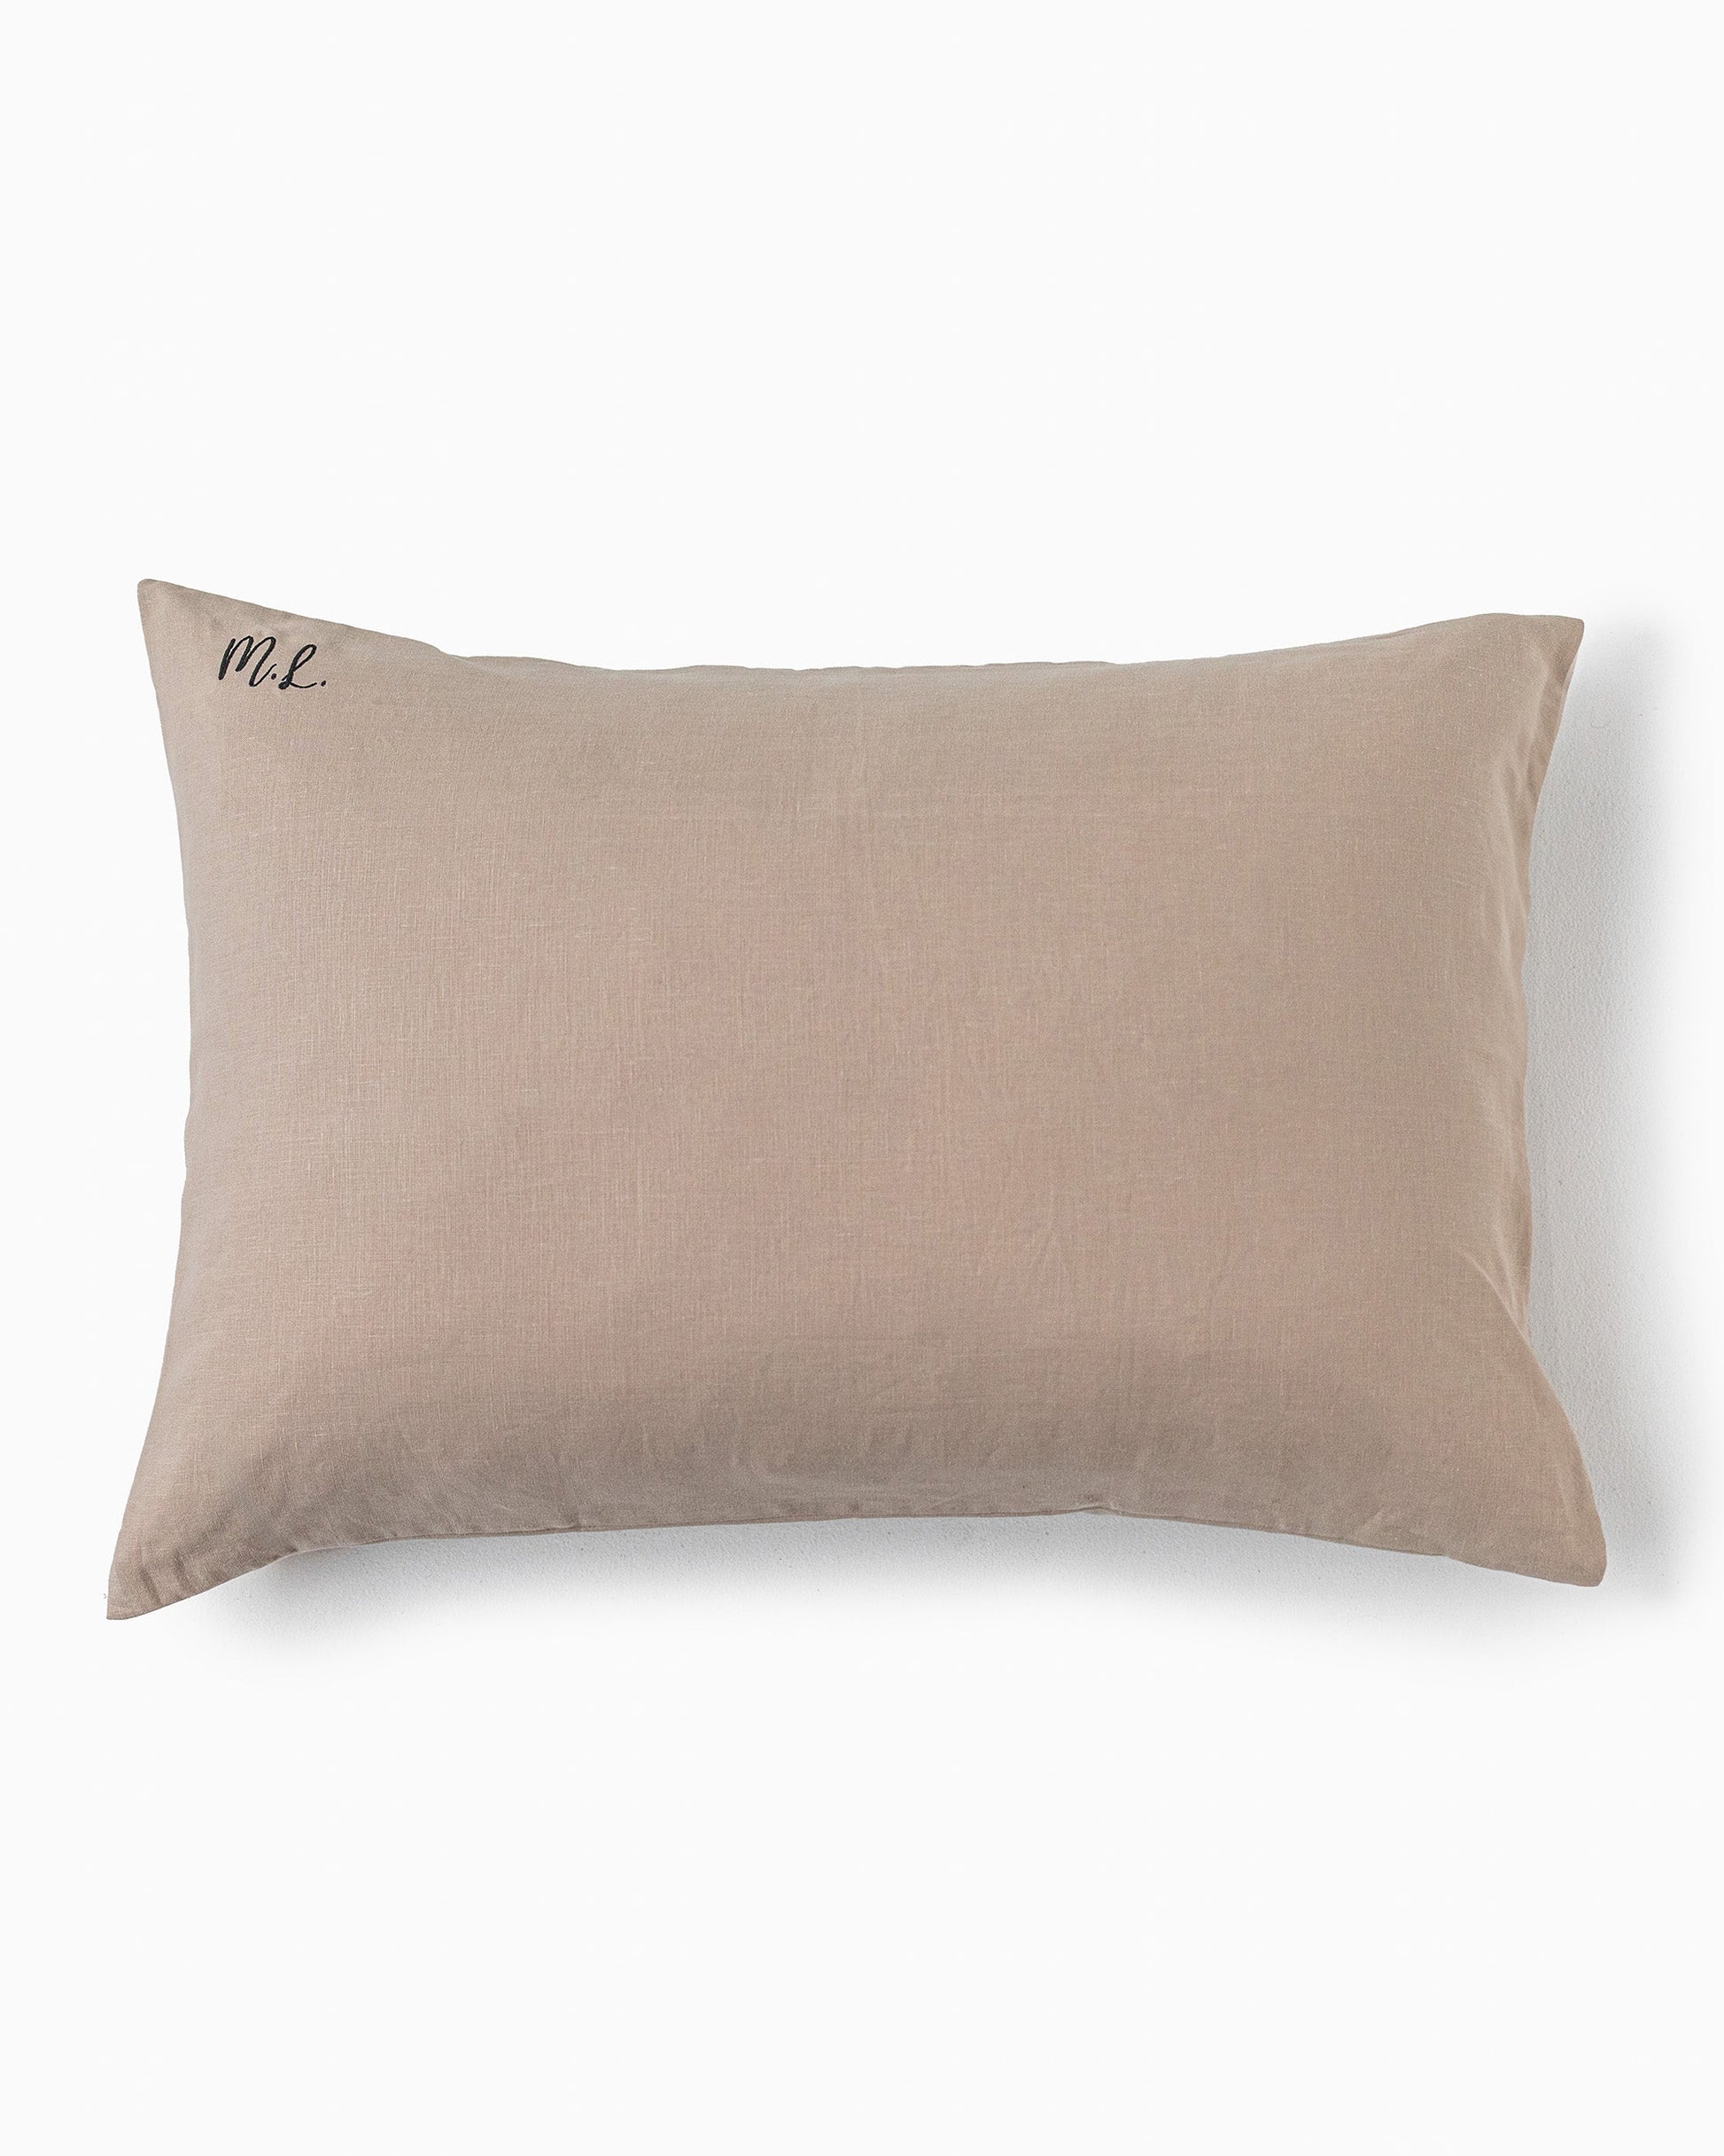 Woodrose linen pillowcase - MagicLinen